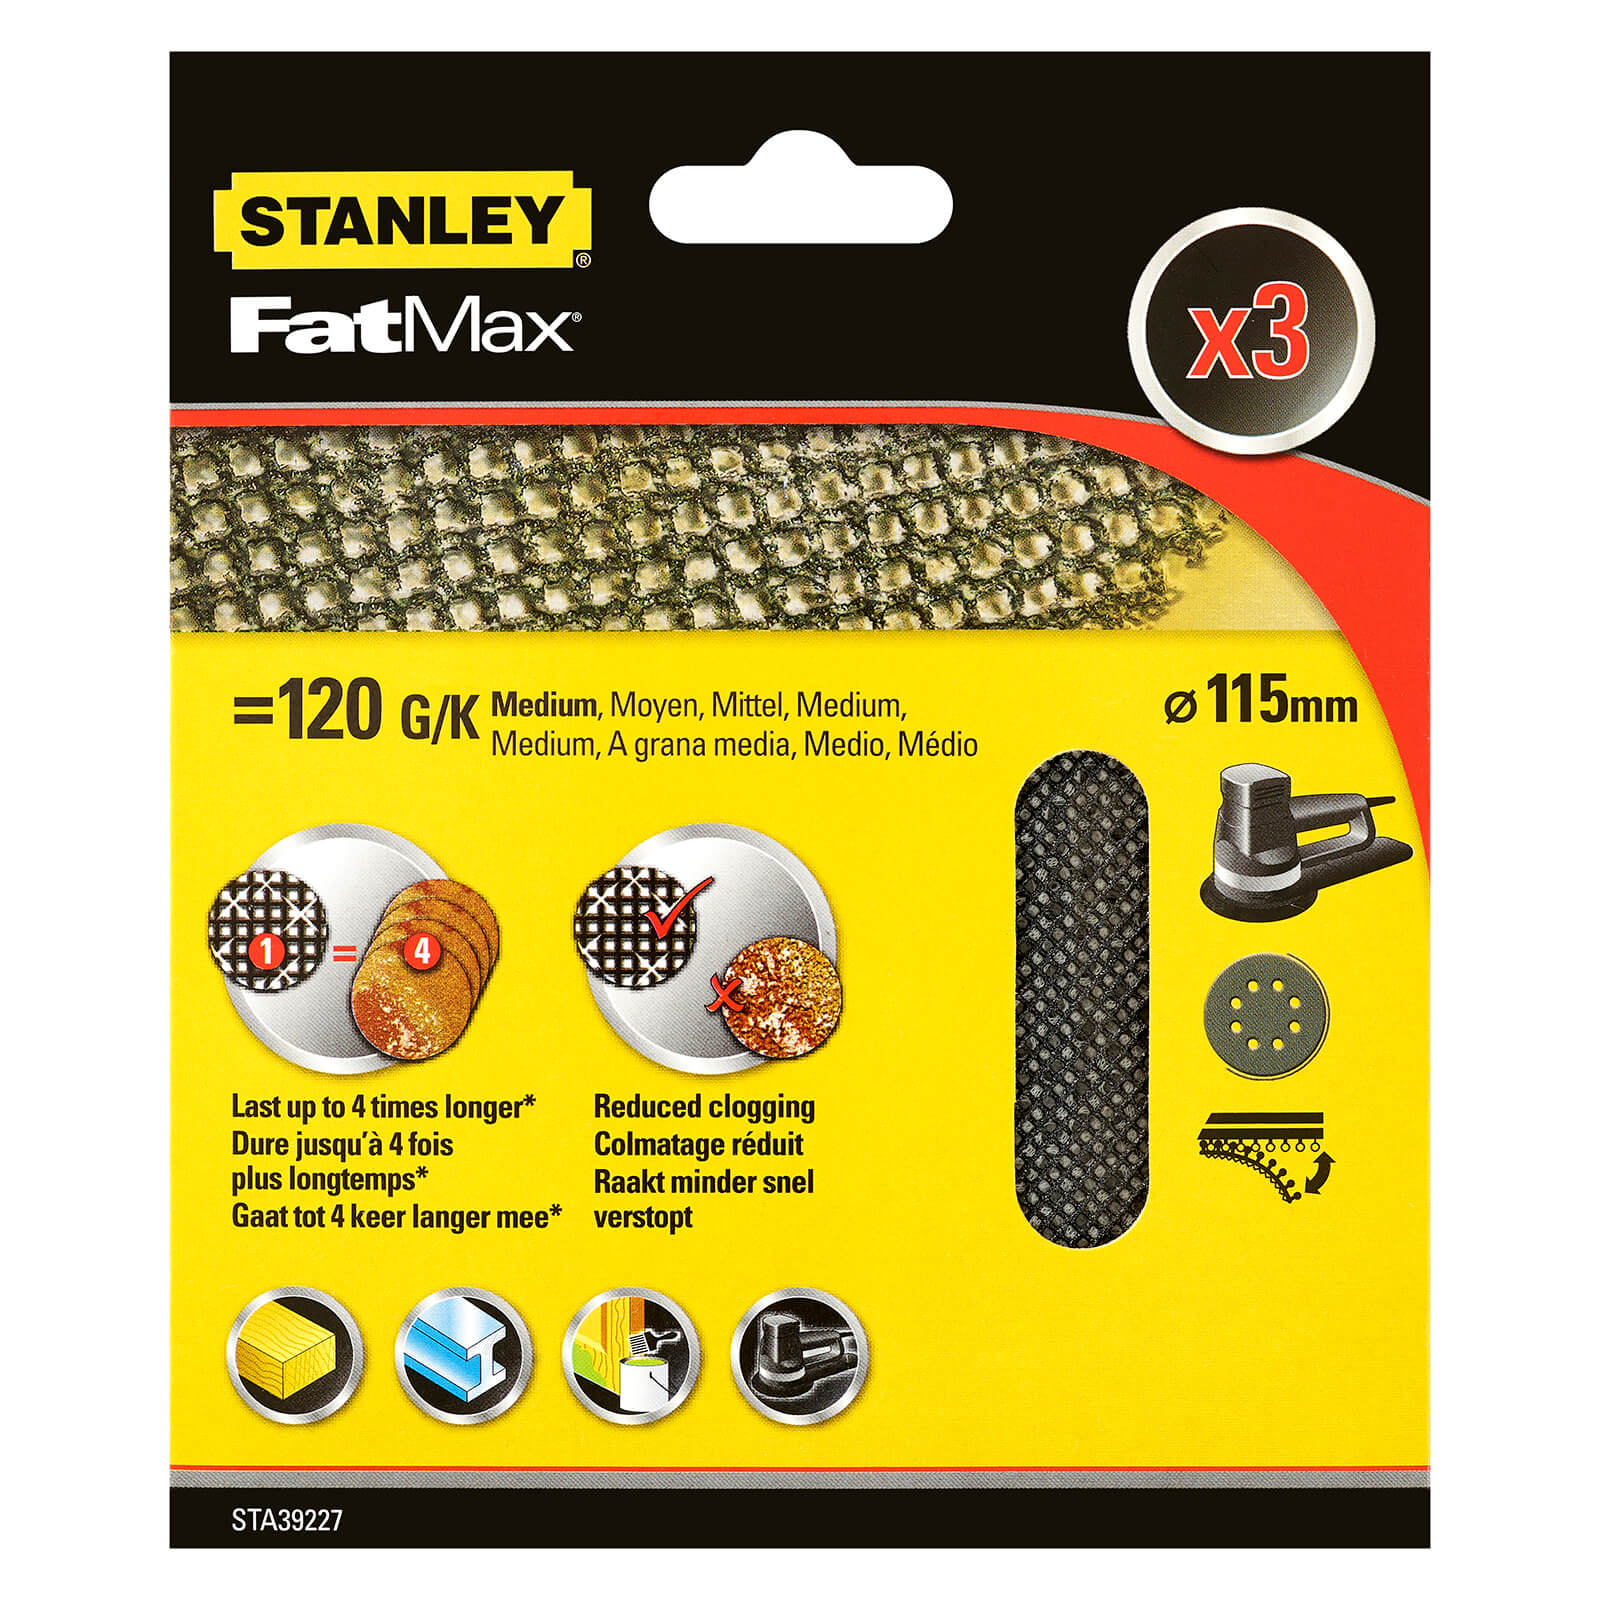 STANLEY FATMAX - 3x 120g Quick Fit Random Orbital Sanding Mesh Discs 115mm